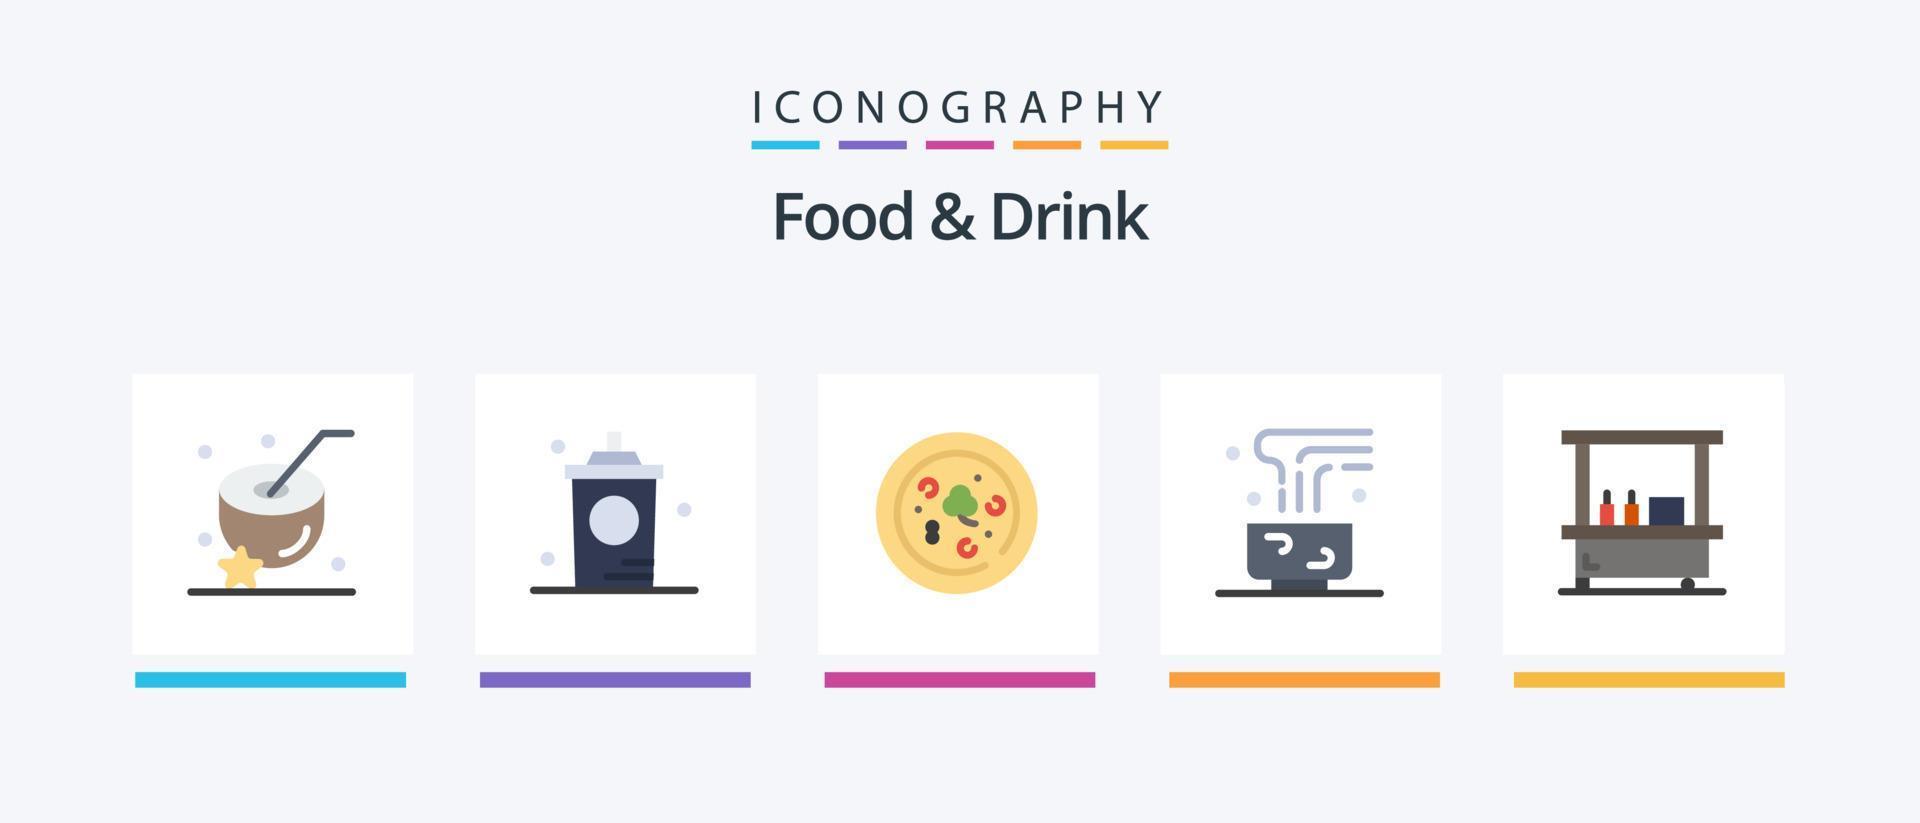 comida y bebida paquete de 5 iconos planos que incluye bebida caliente. alimento. caliente. café. beber. diseño de iconos creativos vector